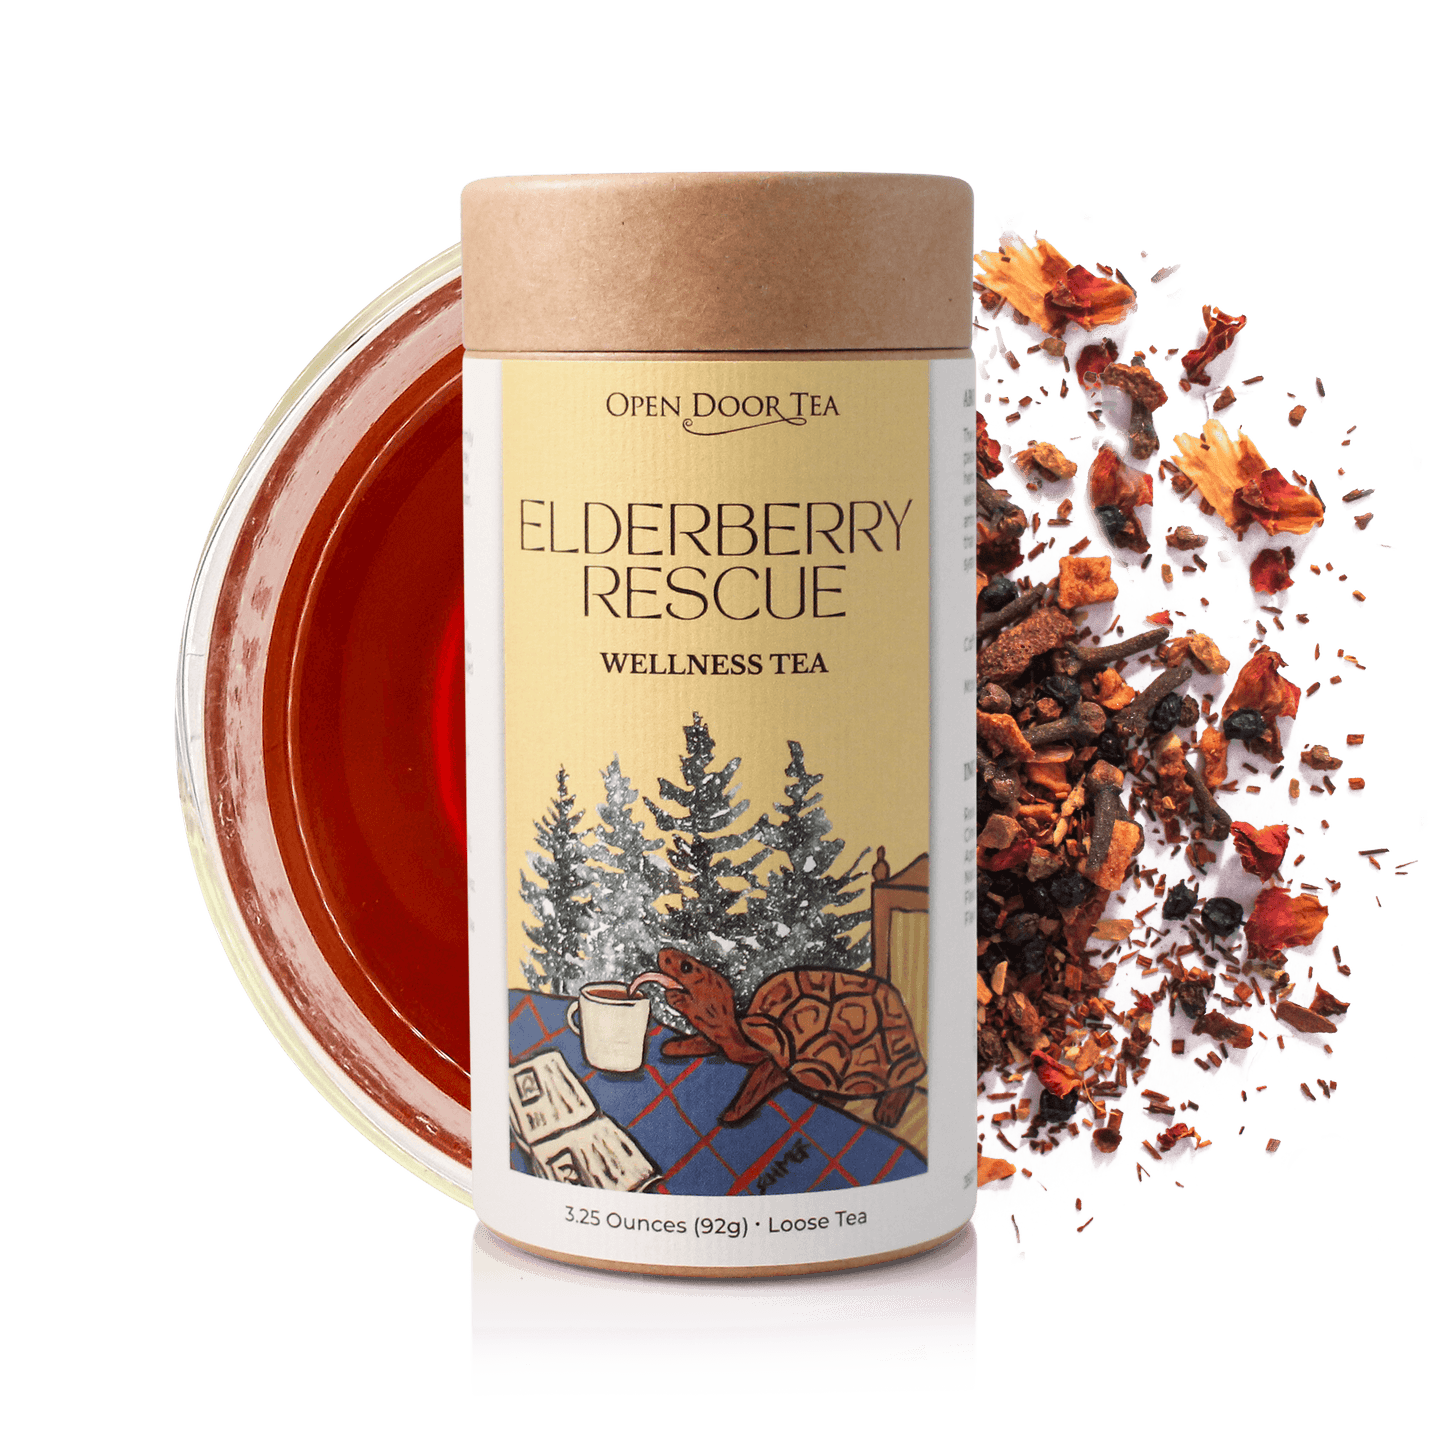 Elderberry Rescue by Open Door Tea